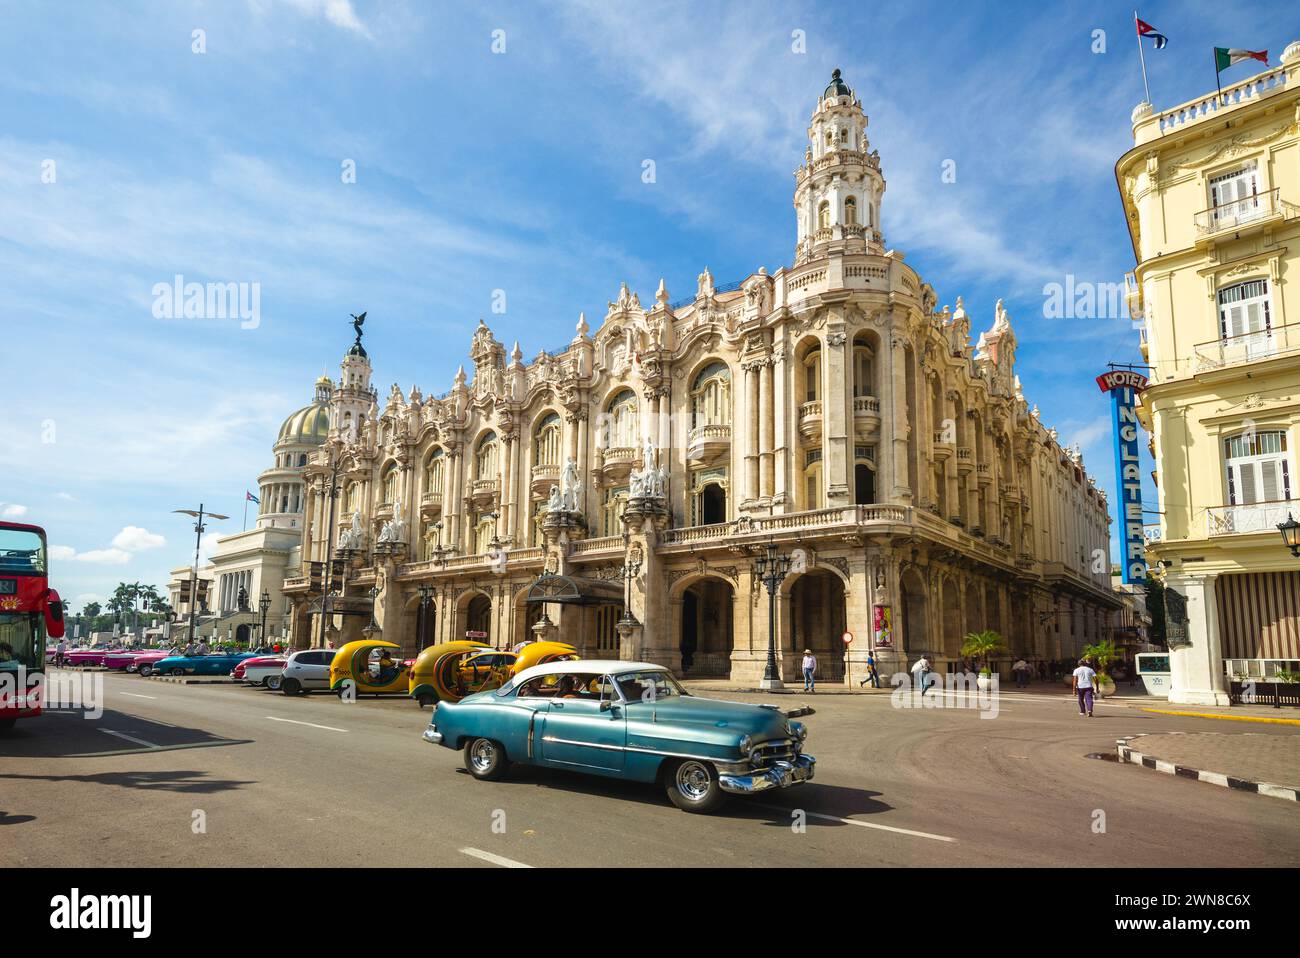 28 octobre 2019 : Gran Teatro de la Habana, grand théâtre de la Havane, un théâtre conçu par l'architecte Paul Belau et situé dans le Paseo del Prado in Banque D'Images